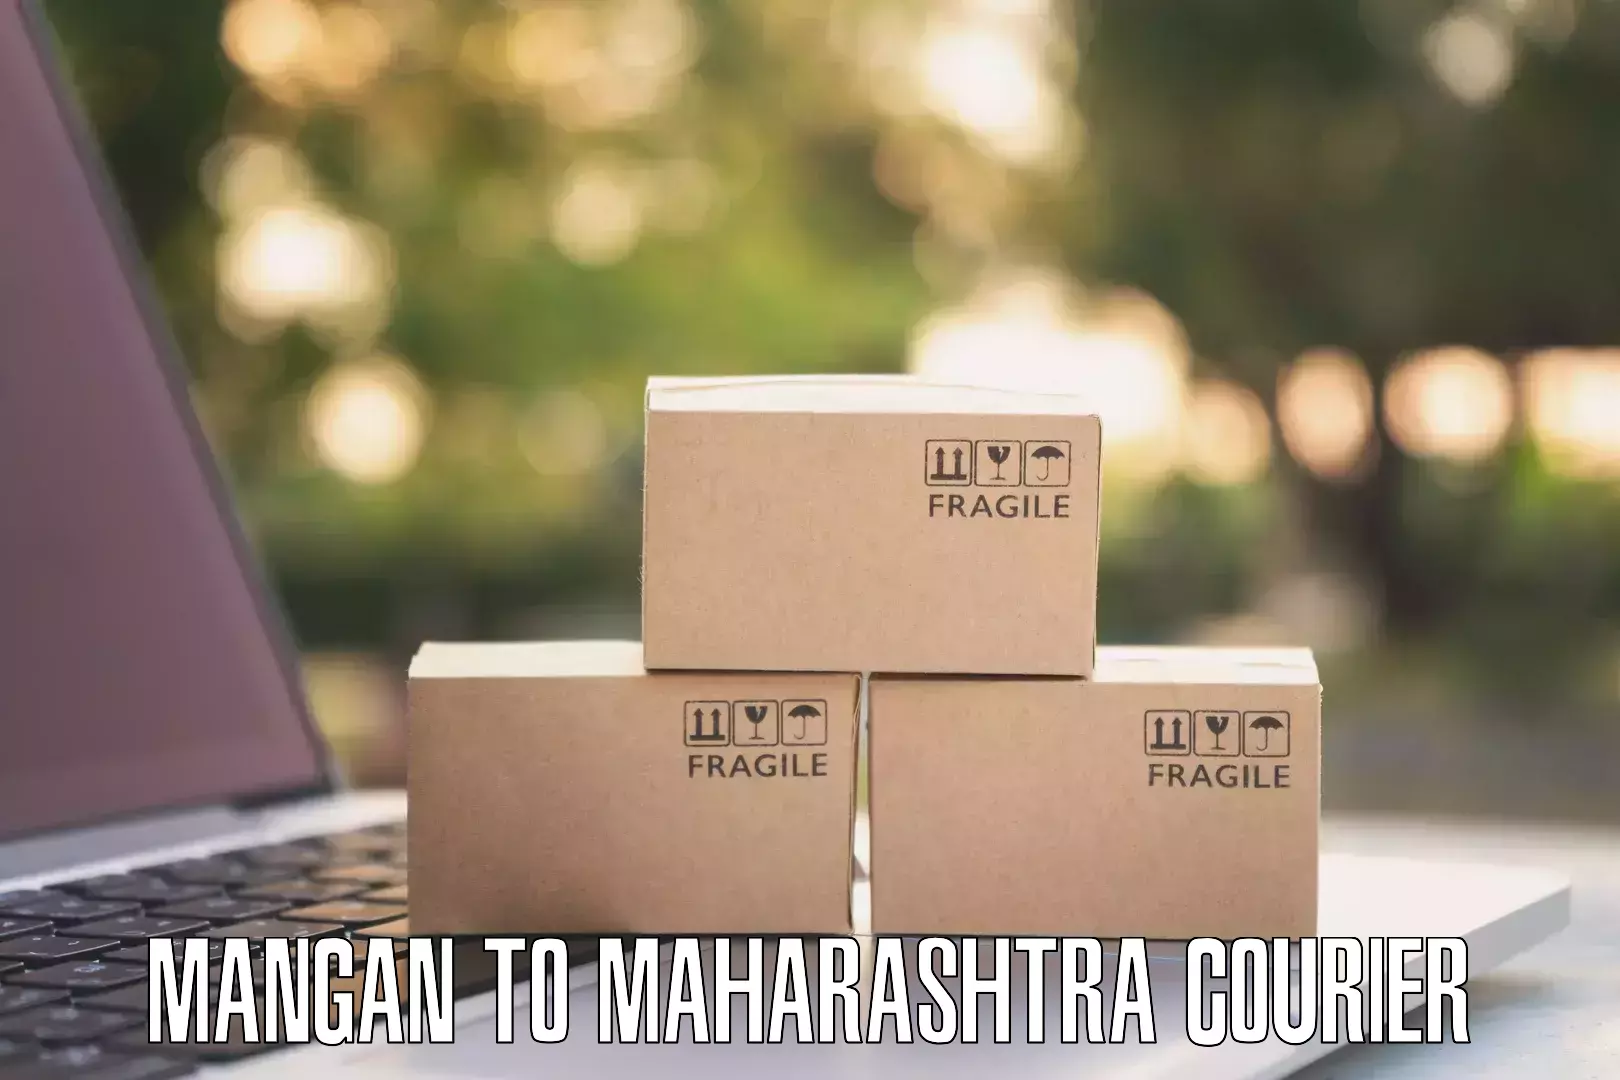 Nationwide courier service Mangan to Kandhar